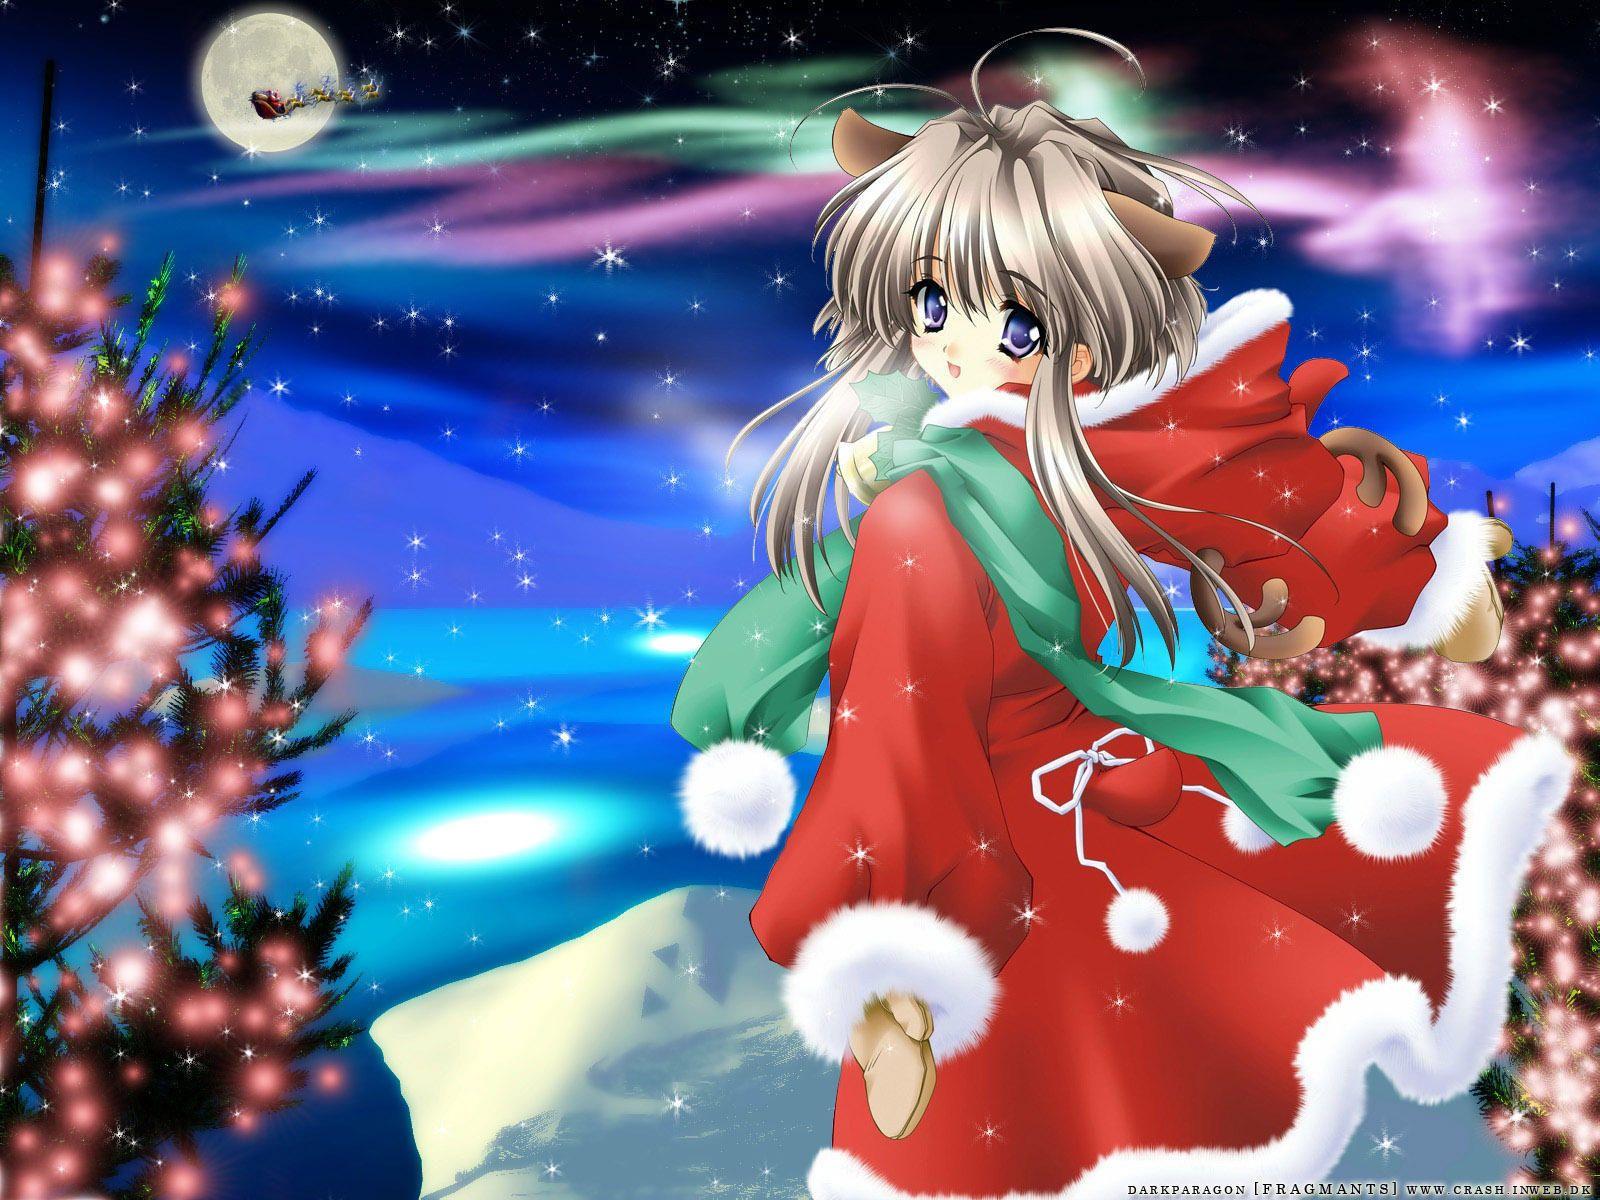 Download the Anime Christmas Wallpaper, Anime Christmas